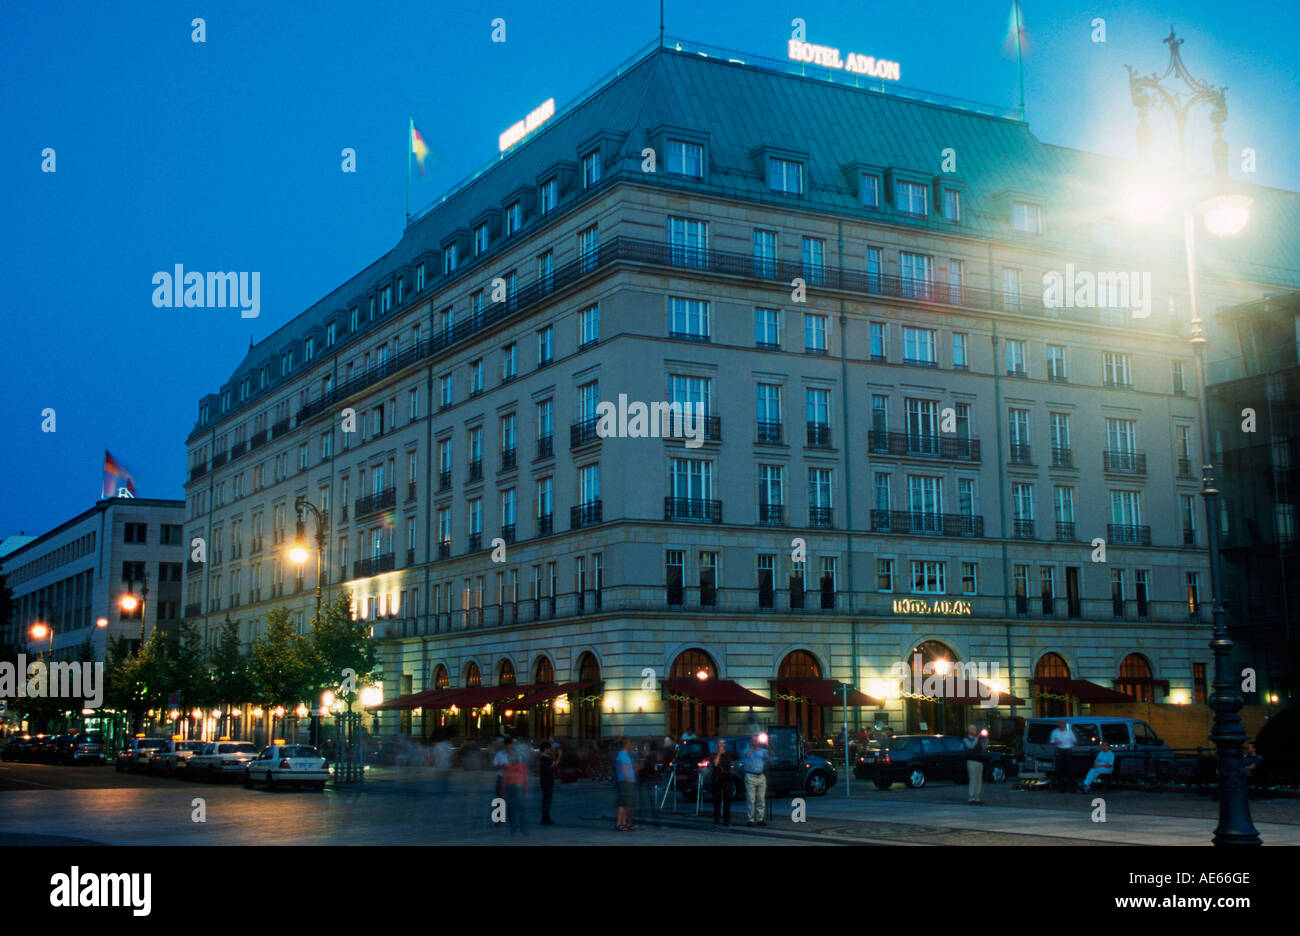 Hotel Adlon, Unter den Linden, Berlin, Germany Stock Photo